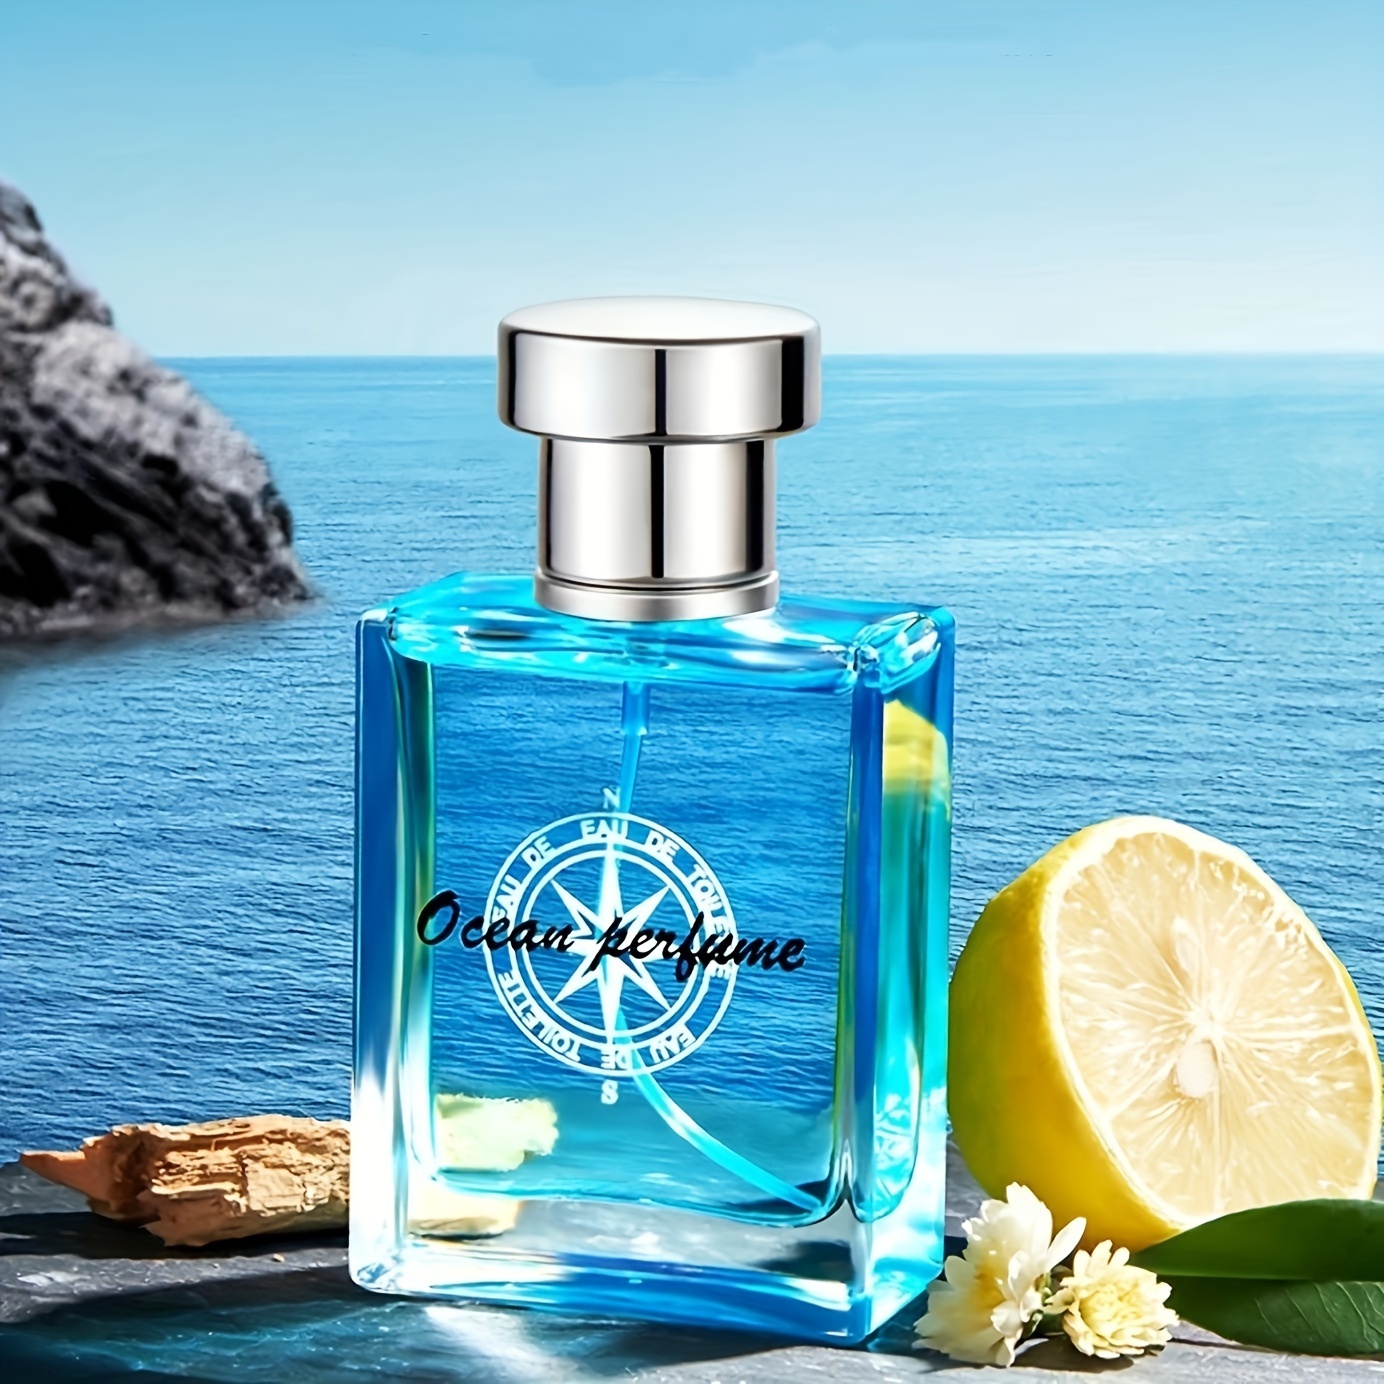 

Parfum Ocean Pheromones Eau De Toilette pour Homme, Fragrance Légère Durable Parfum Frais Naturel, Pour Rendez-vous, Fête, Meilleur Cadeau Parfum pour Homme, 50ml 1.7 Fl. Oz.